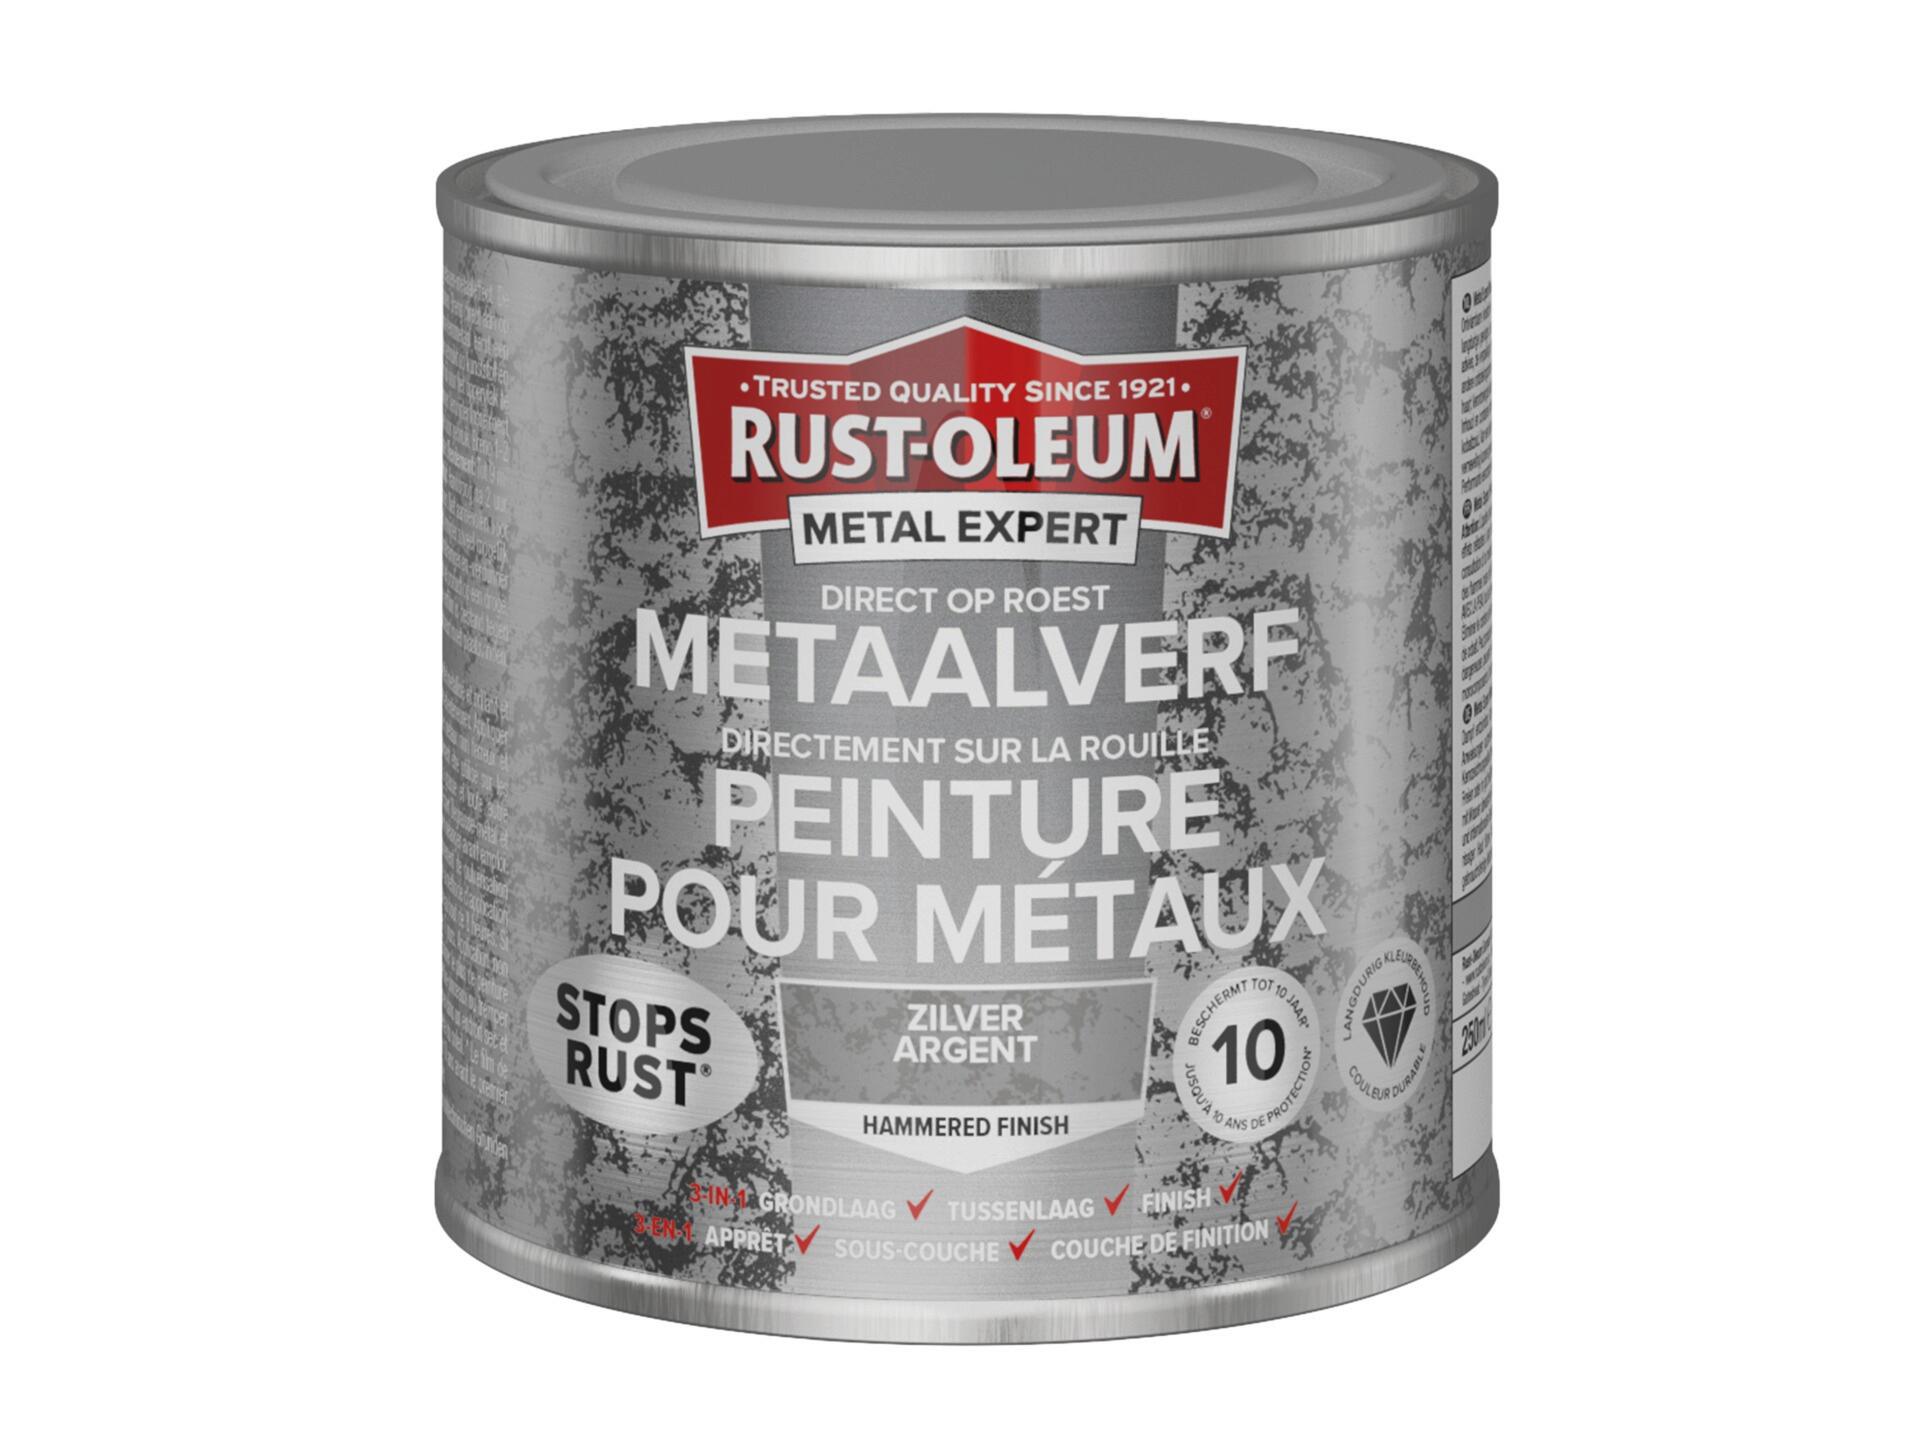 Rust-oleum Metal Expert peinture pour métaux martelé 250ml or